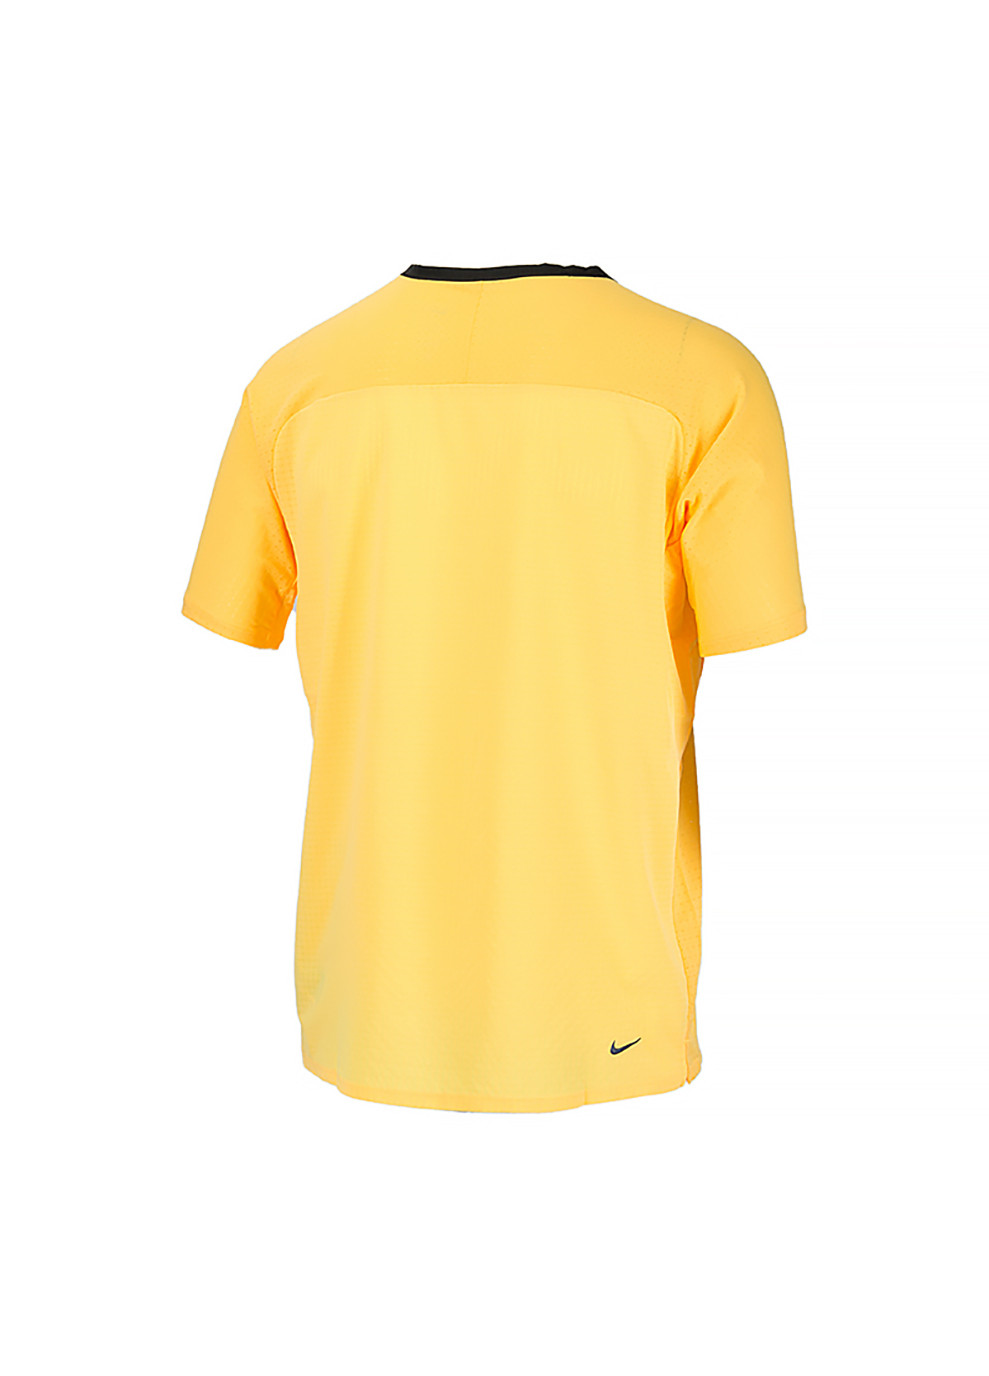 Оранжевая мужская футболка m nk df soar chase ss top оранжевый Nike